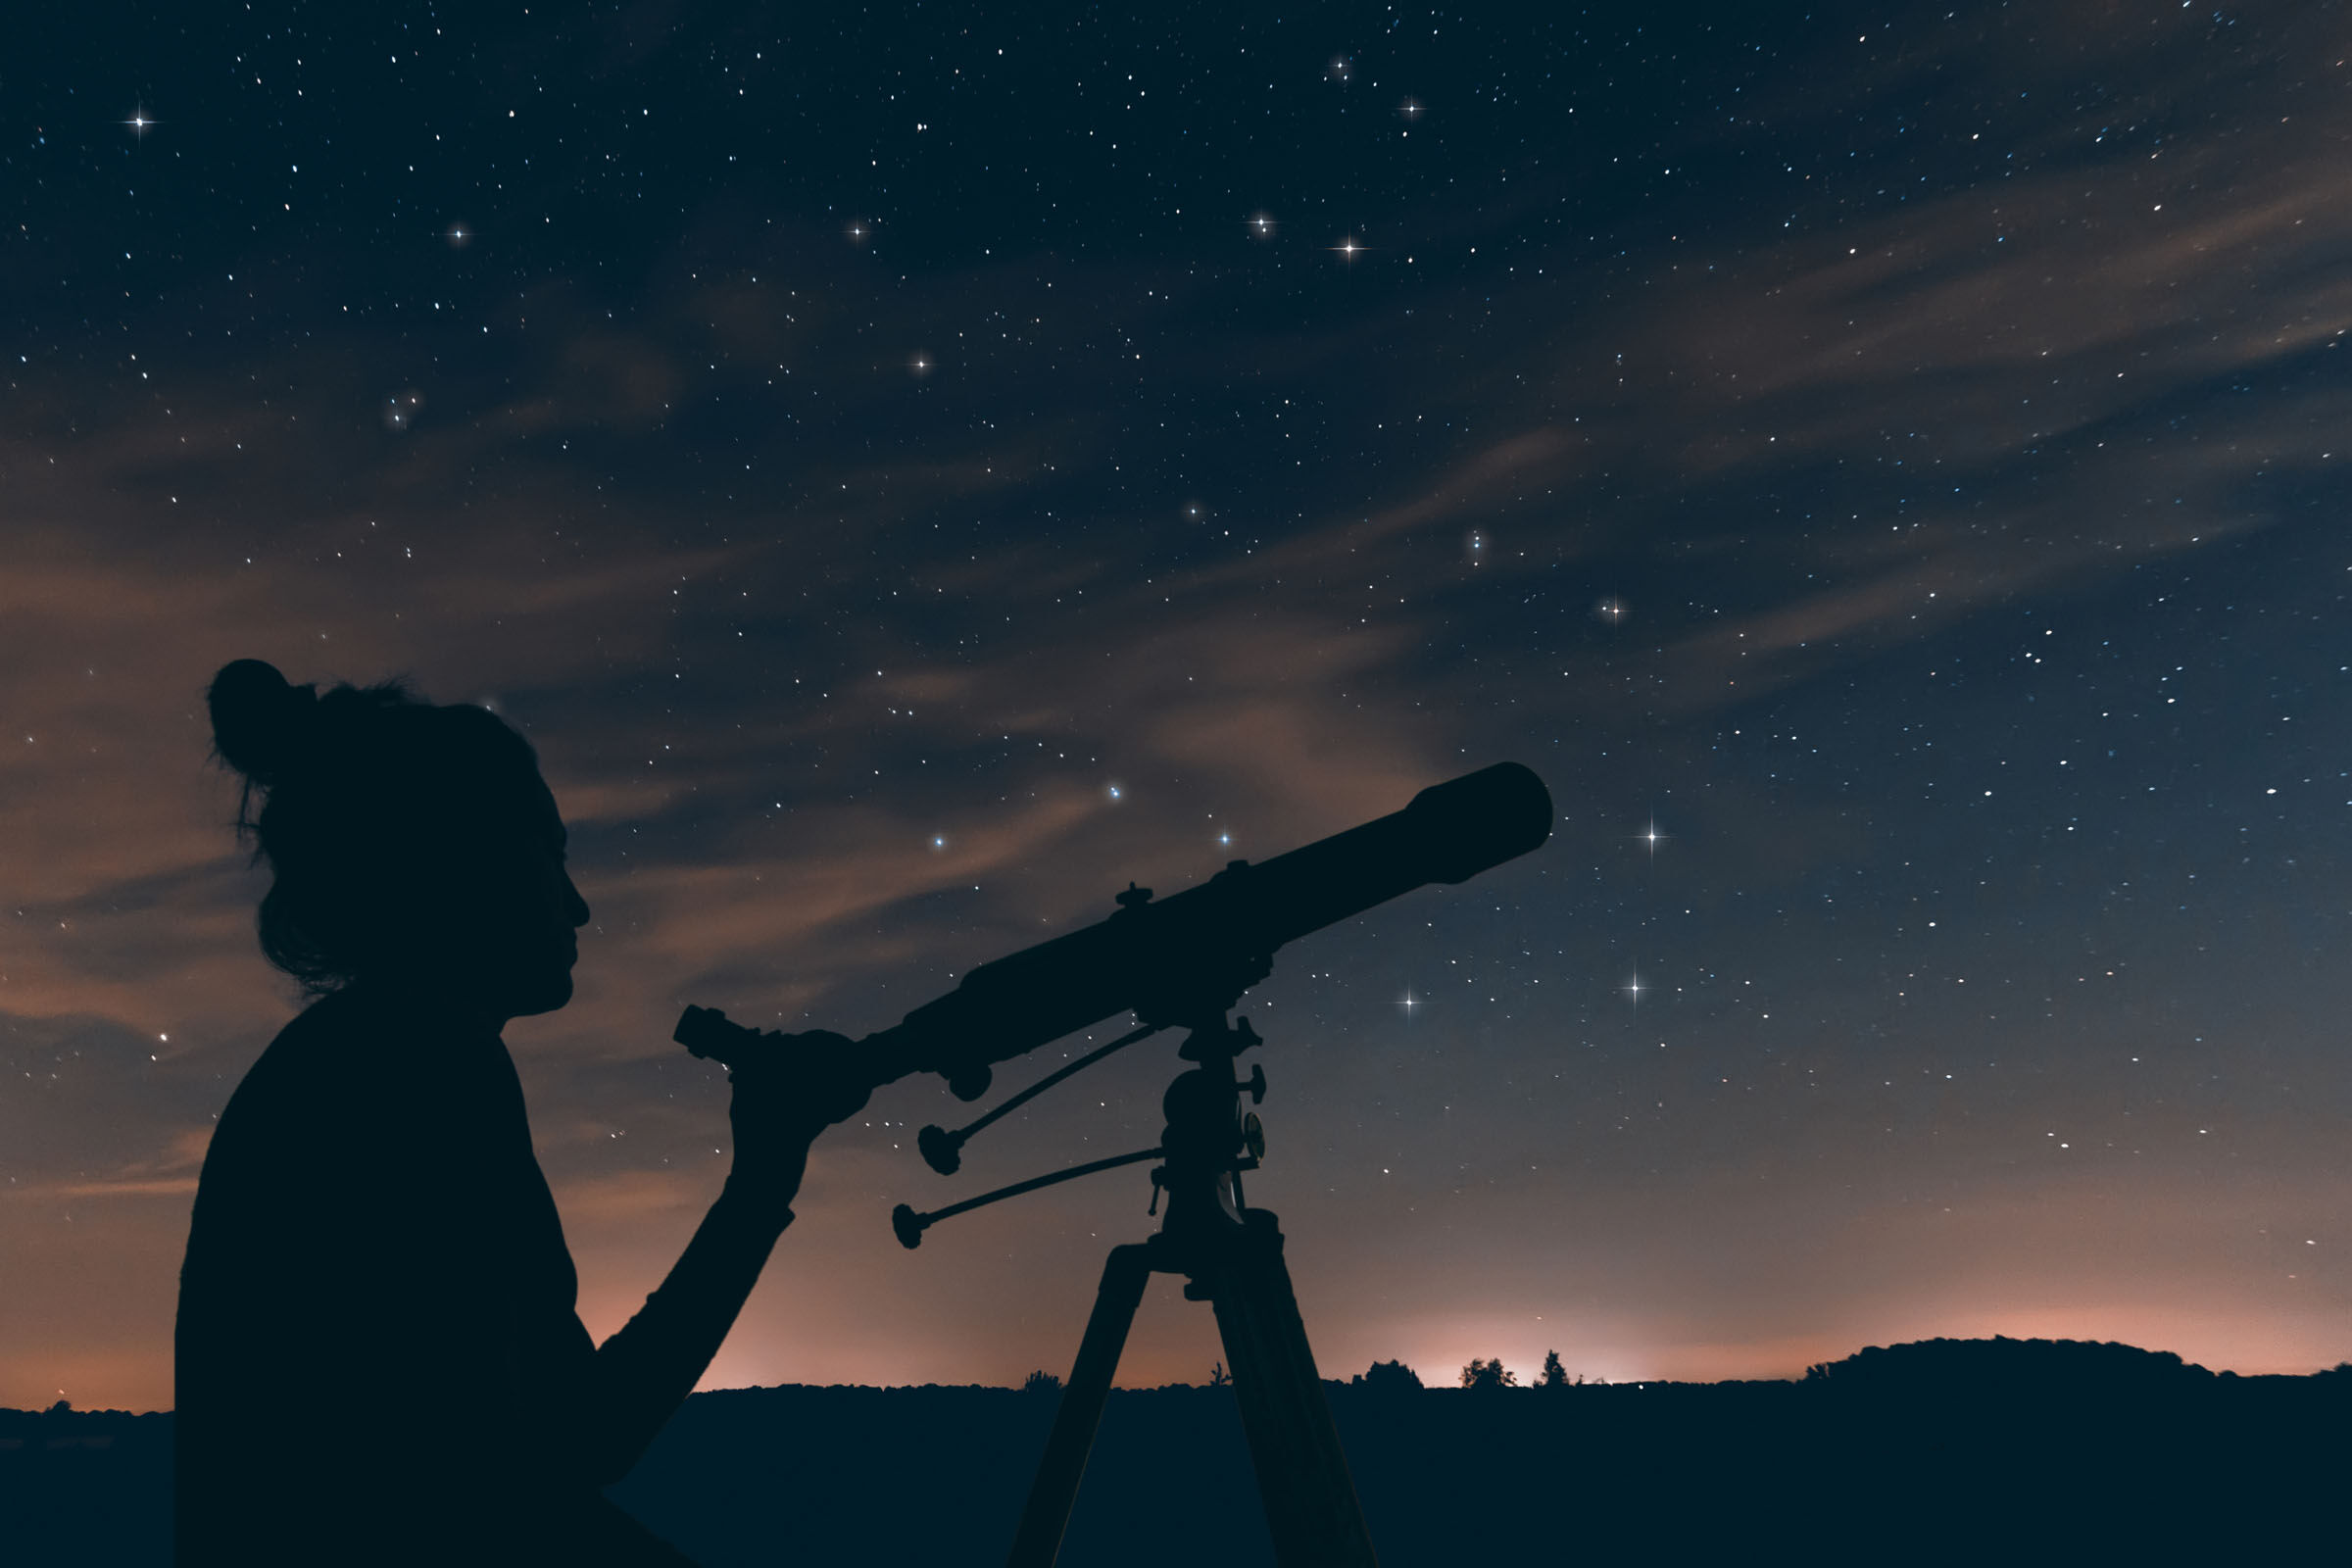 كيف تشاهد الكواكب الخمسة محاذاة في سماء ليل الاثنين